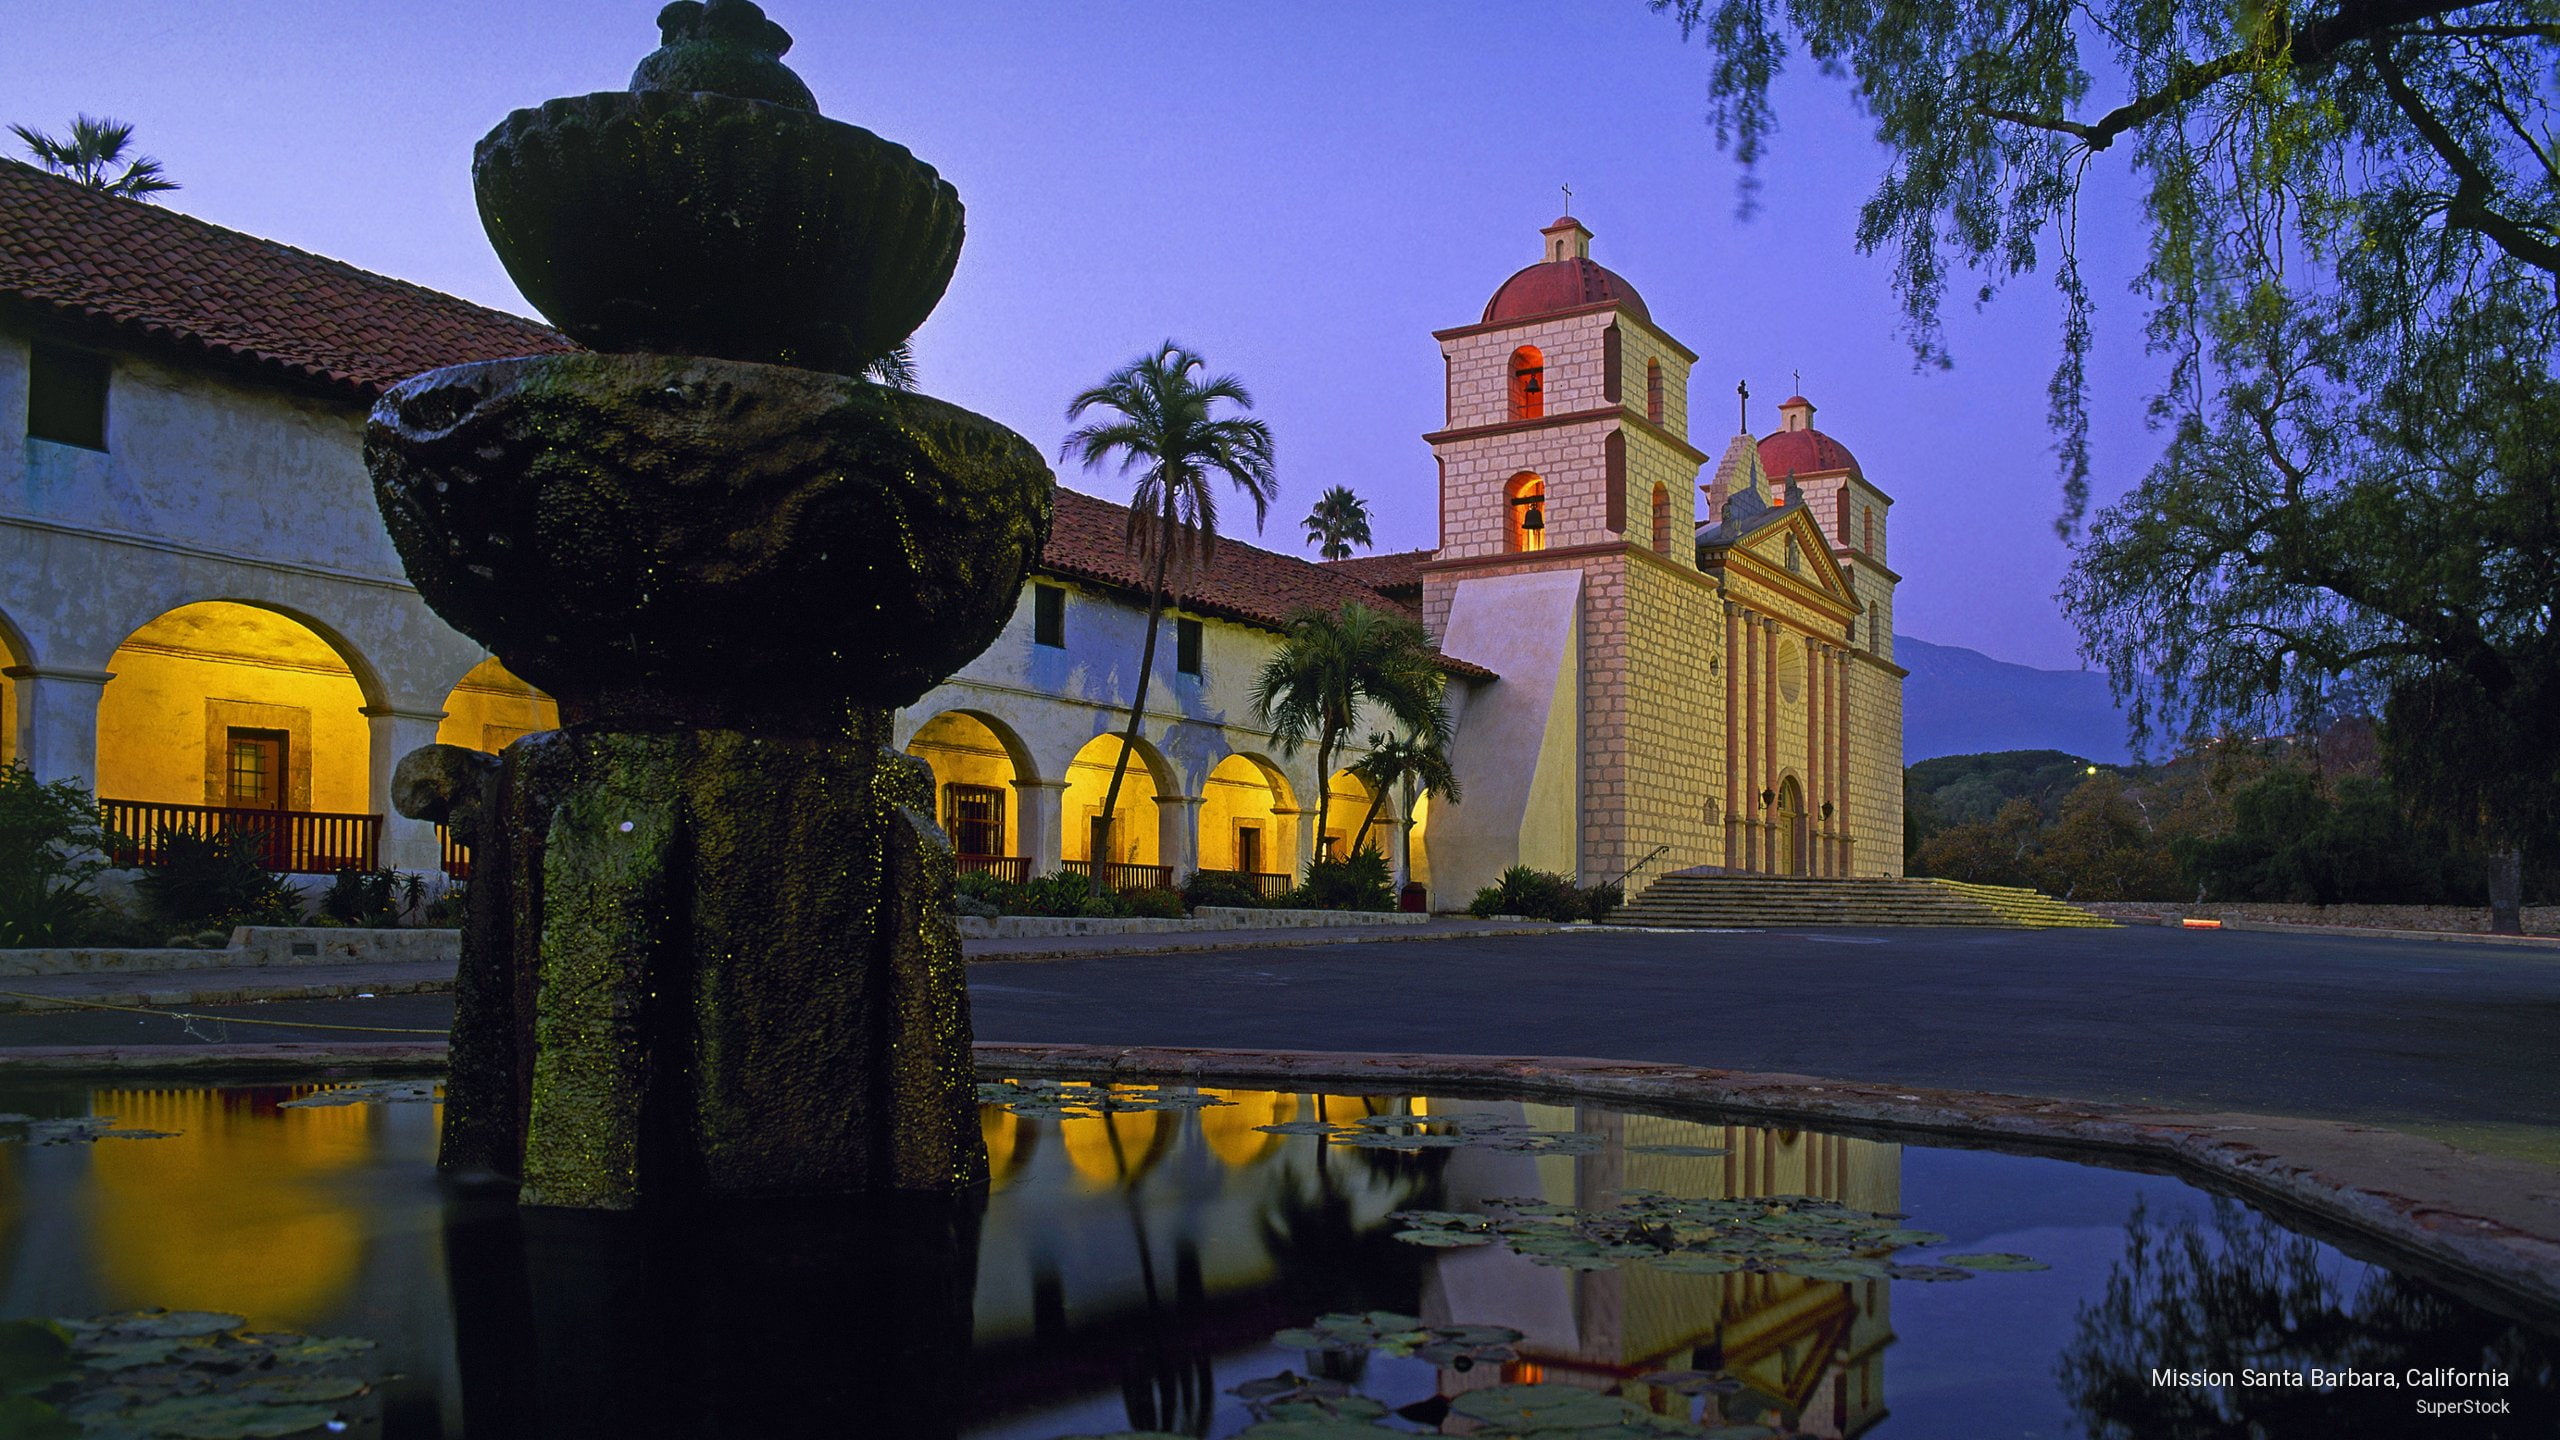 Mission Santa Barbara, California, Architecture